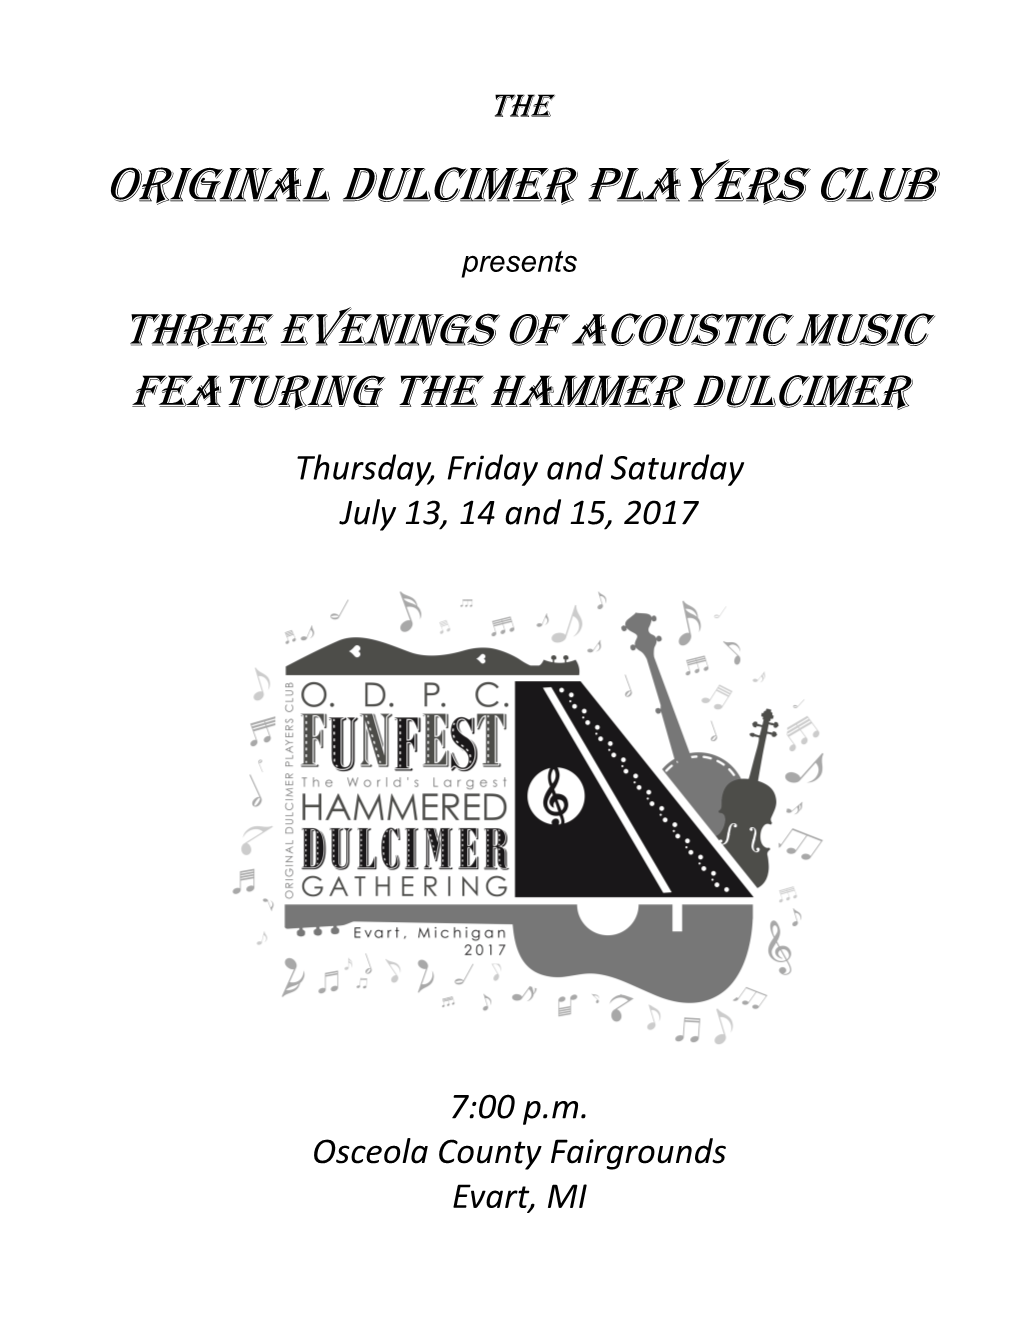 Original Dulcimer Players Club